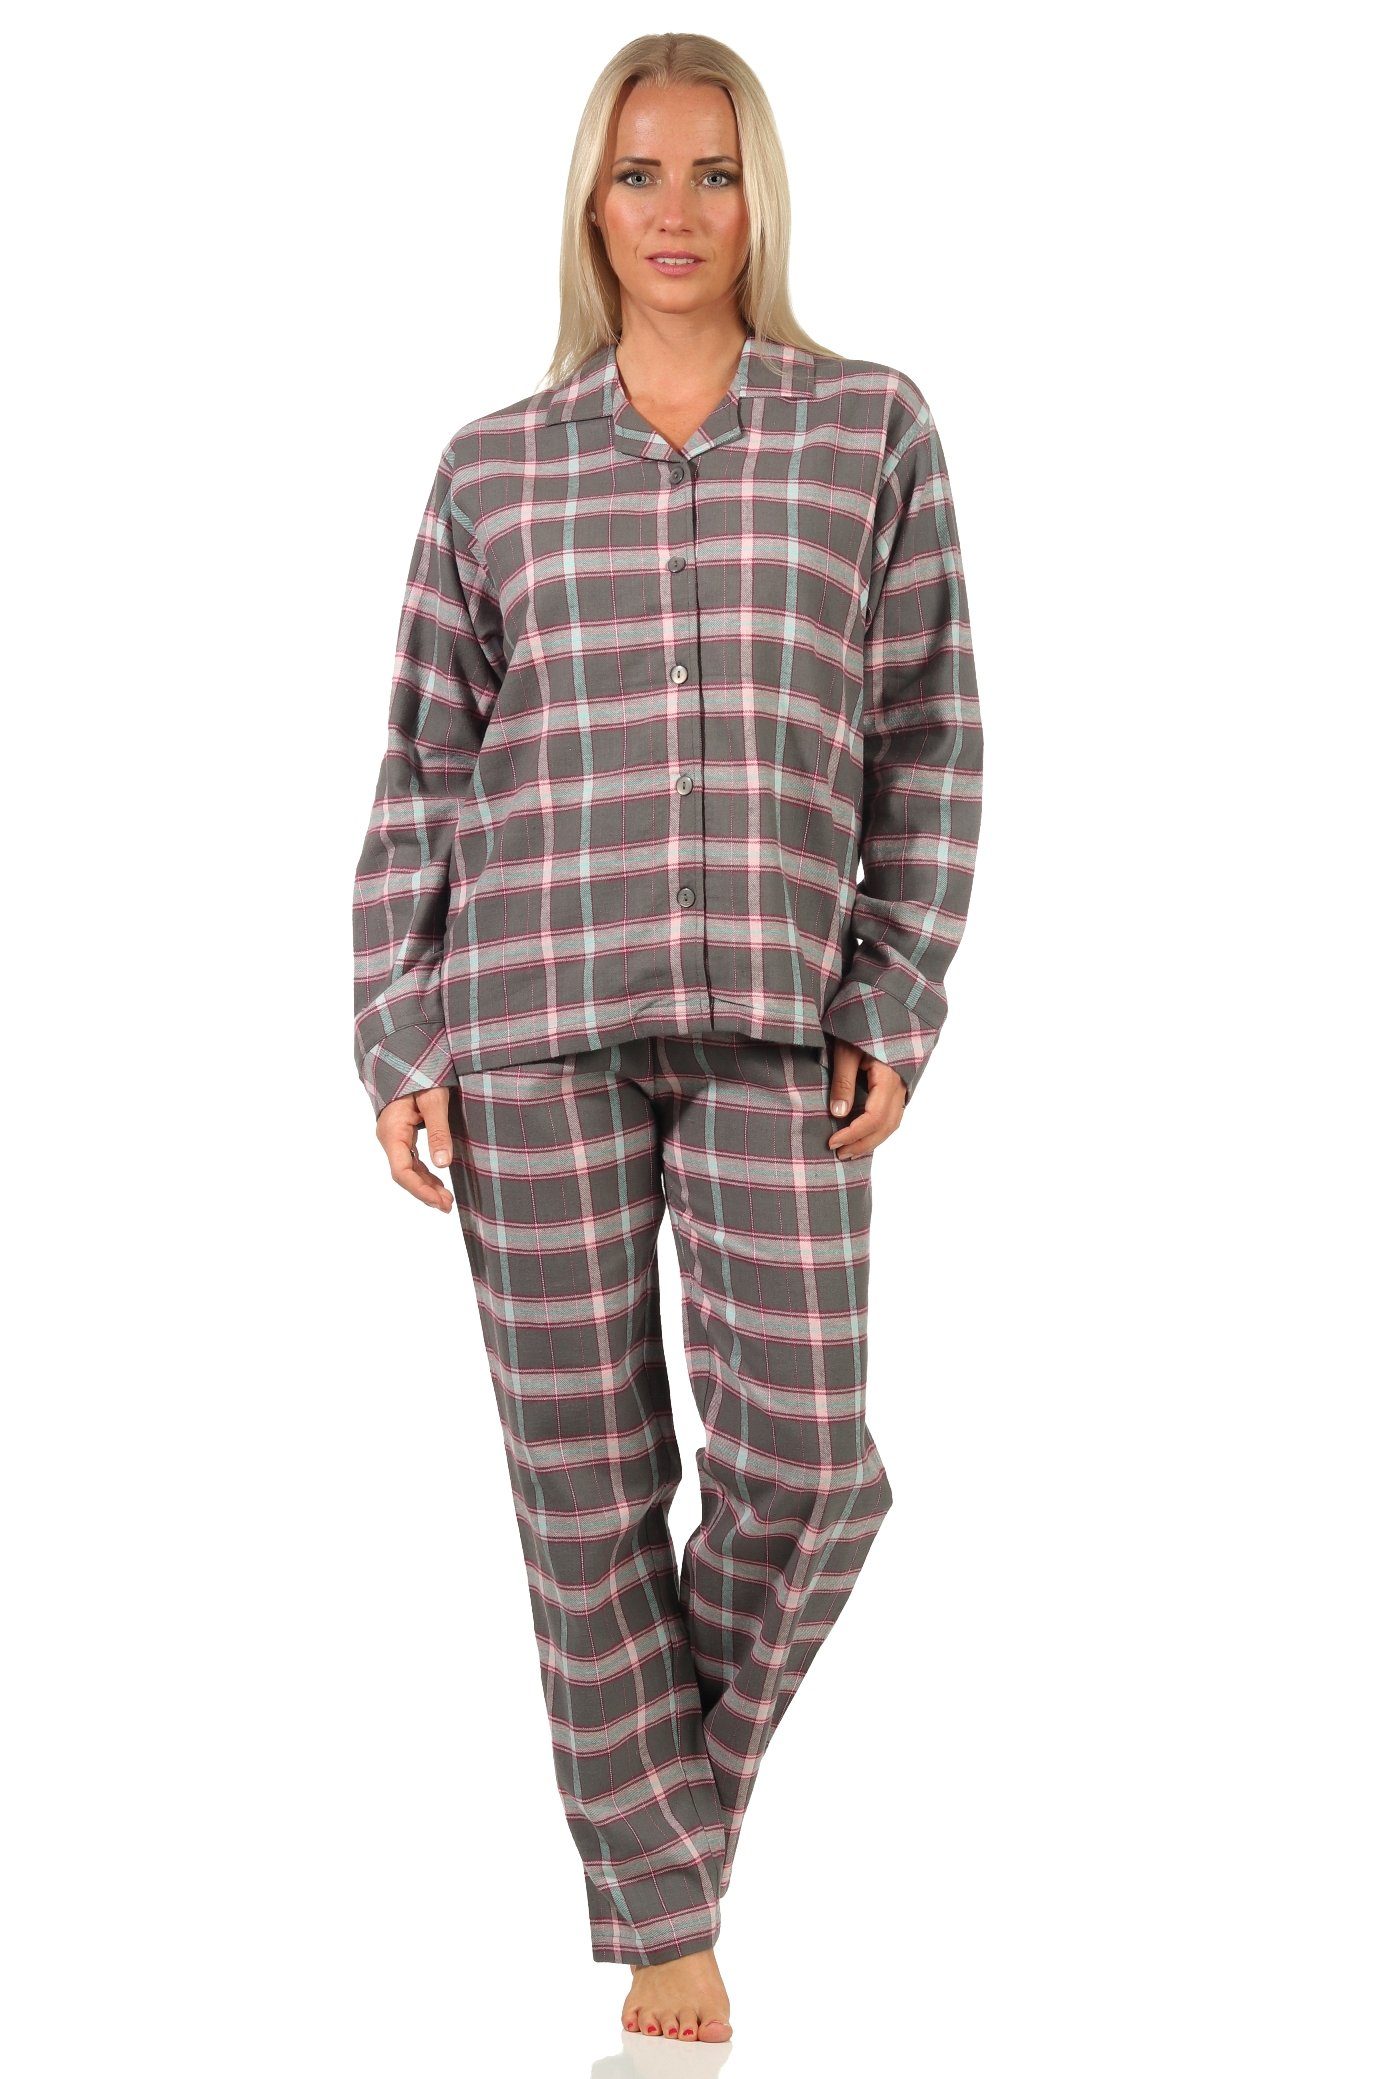 by Damen Creative und Flanell kariert Normann Knopfleiste Schlafanzug Hemdkragen Pyjama mit